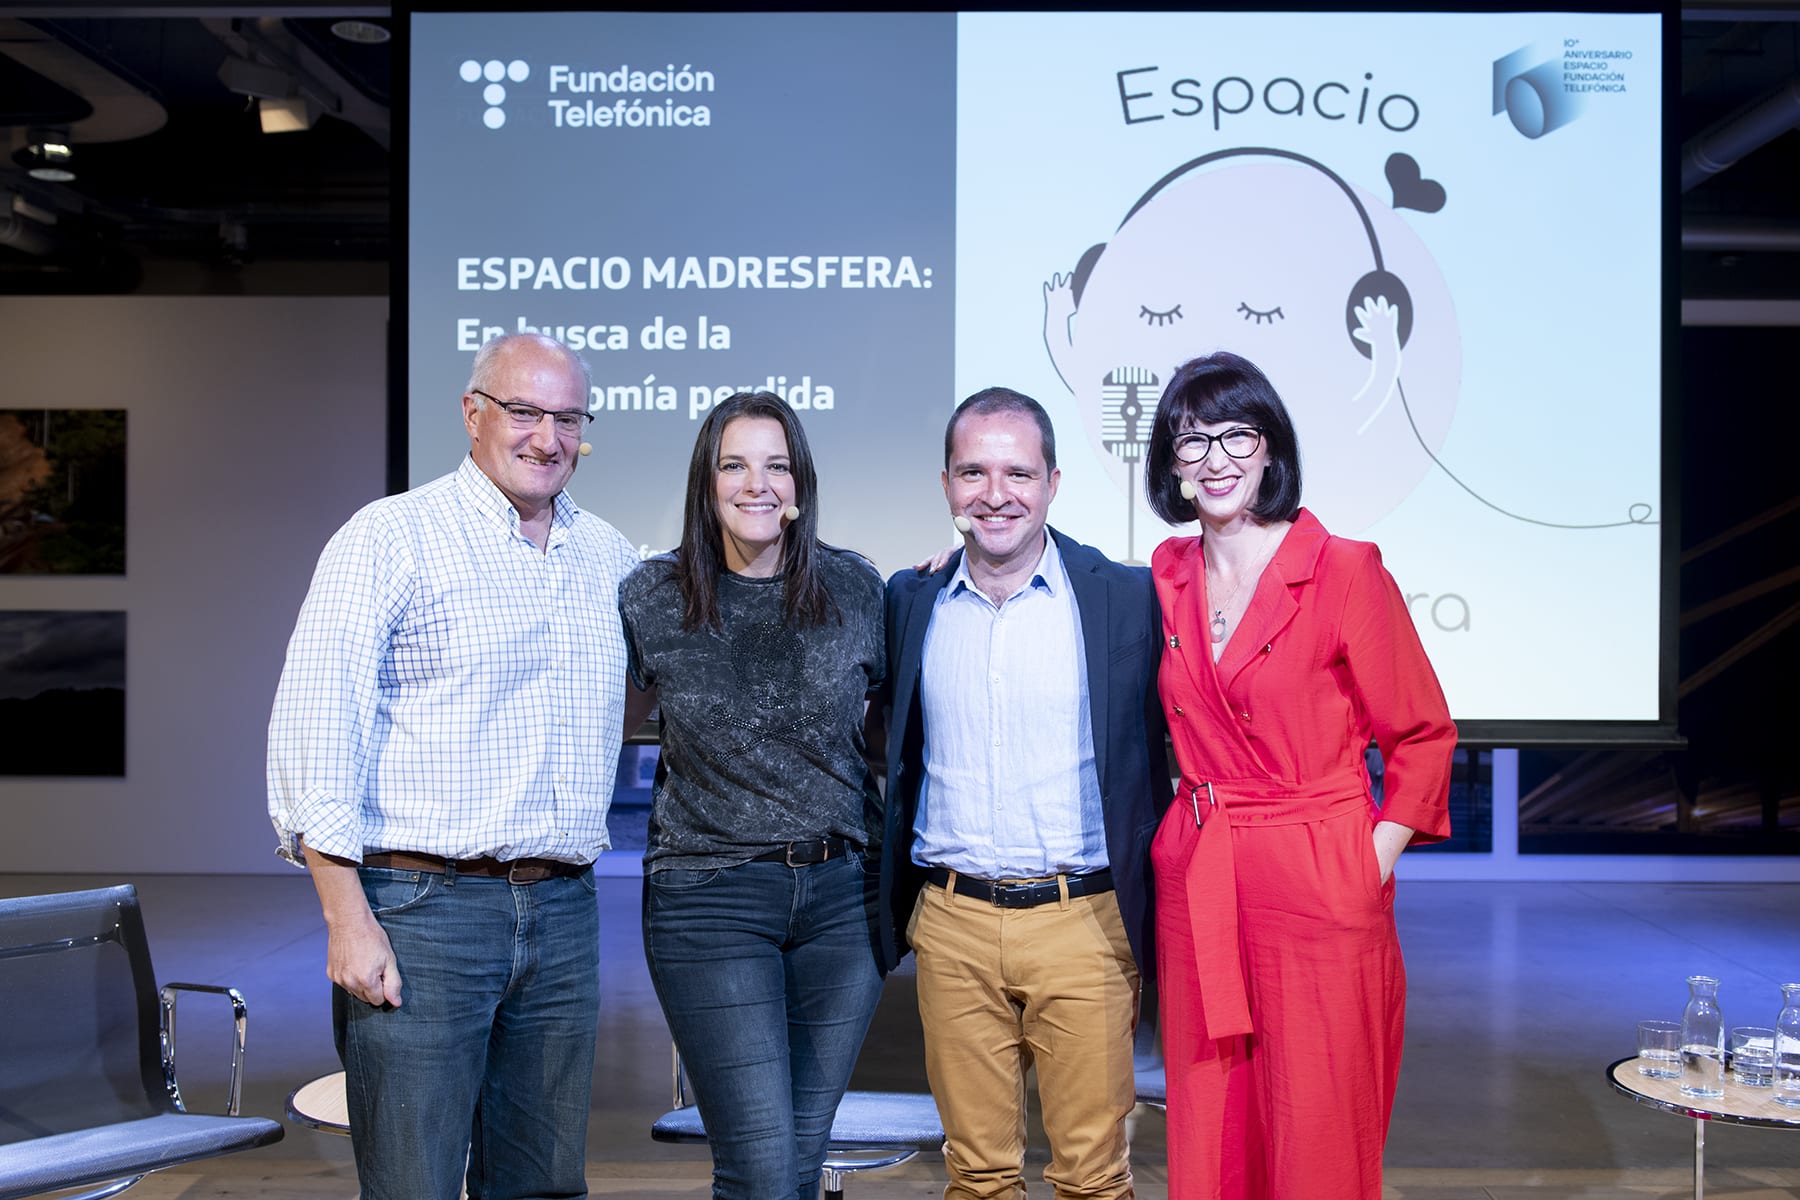 #EspacioMadresfera: En busca de la autonomía perdida, con Carolina Denia, Borja Adsuara y Alejandro Rodrigo.